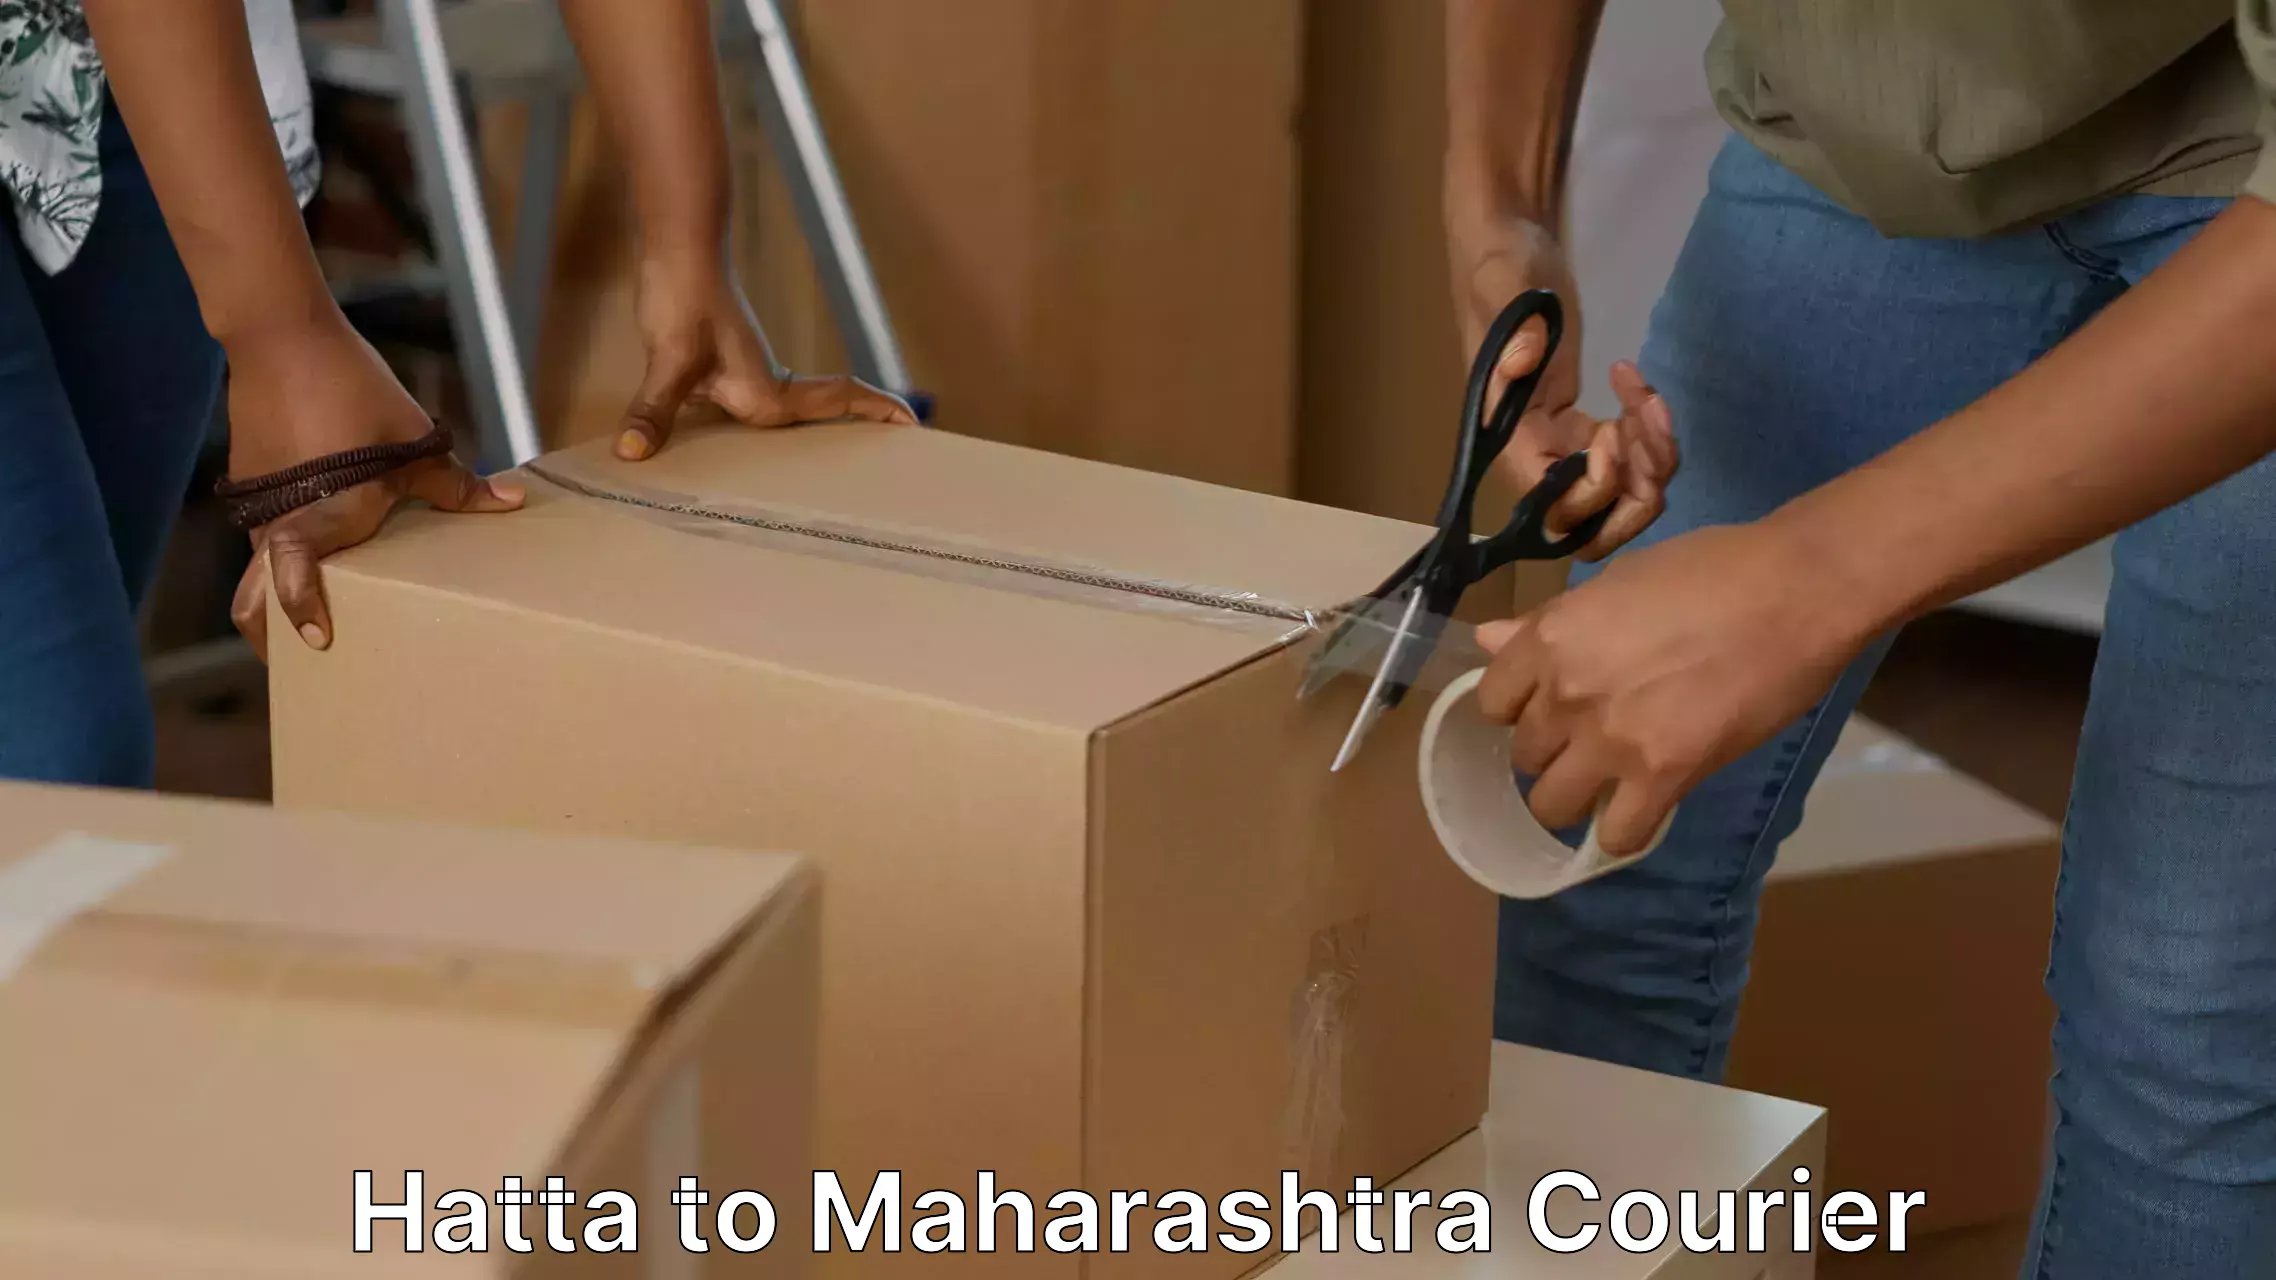 Trusted moving company Hatta to Maharashtra